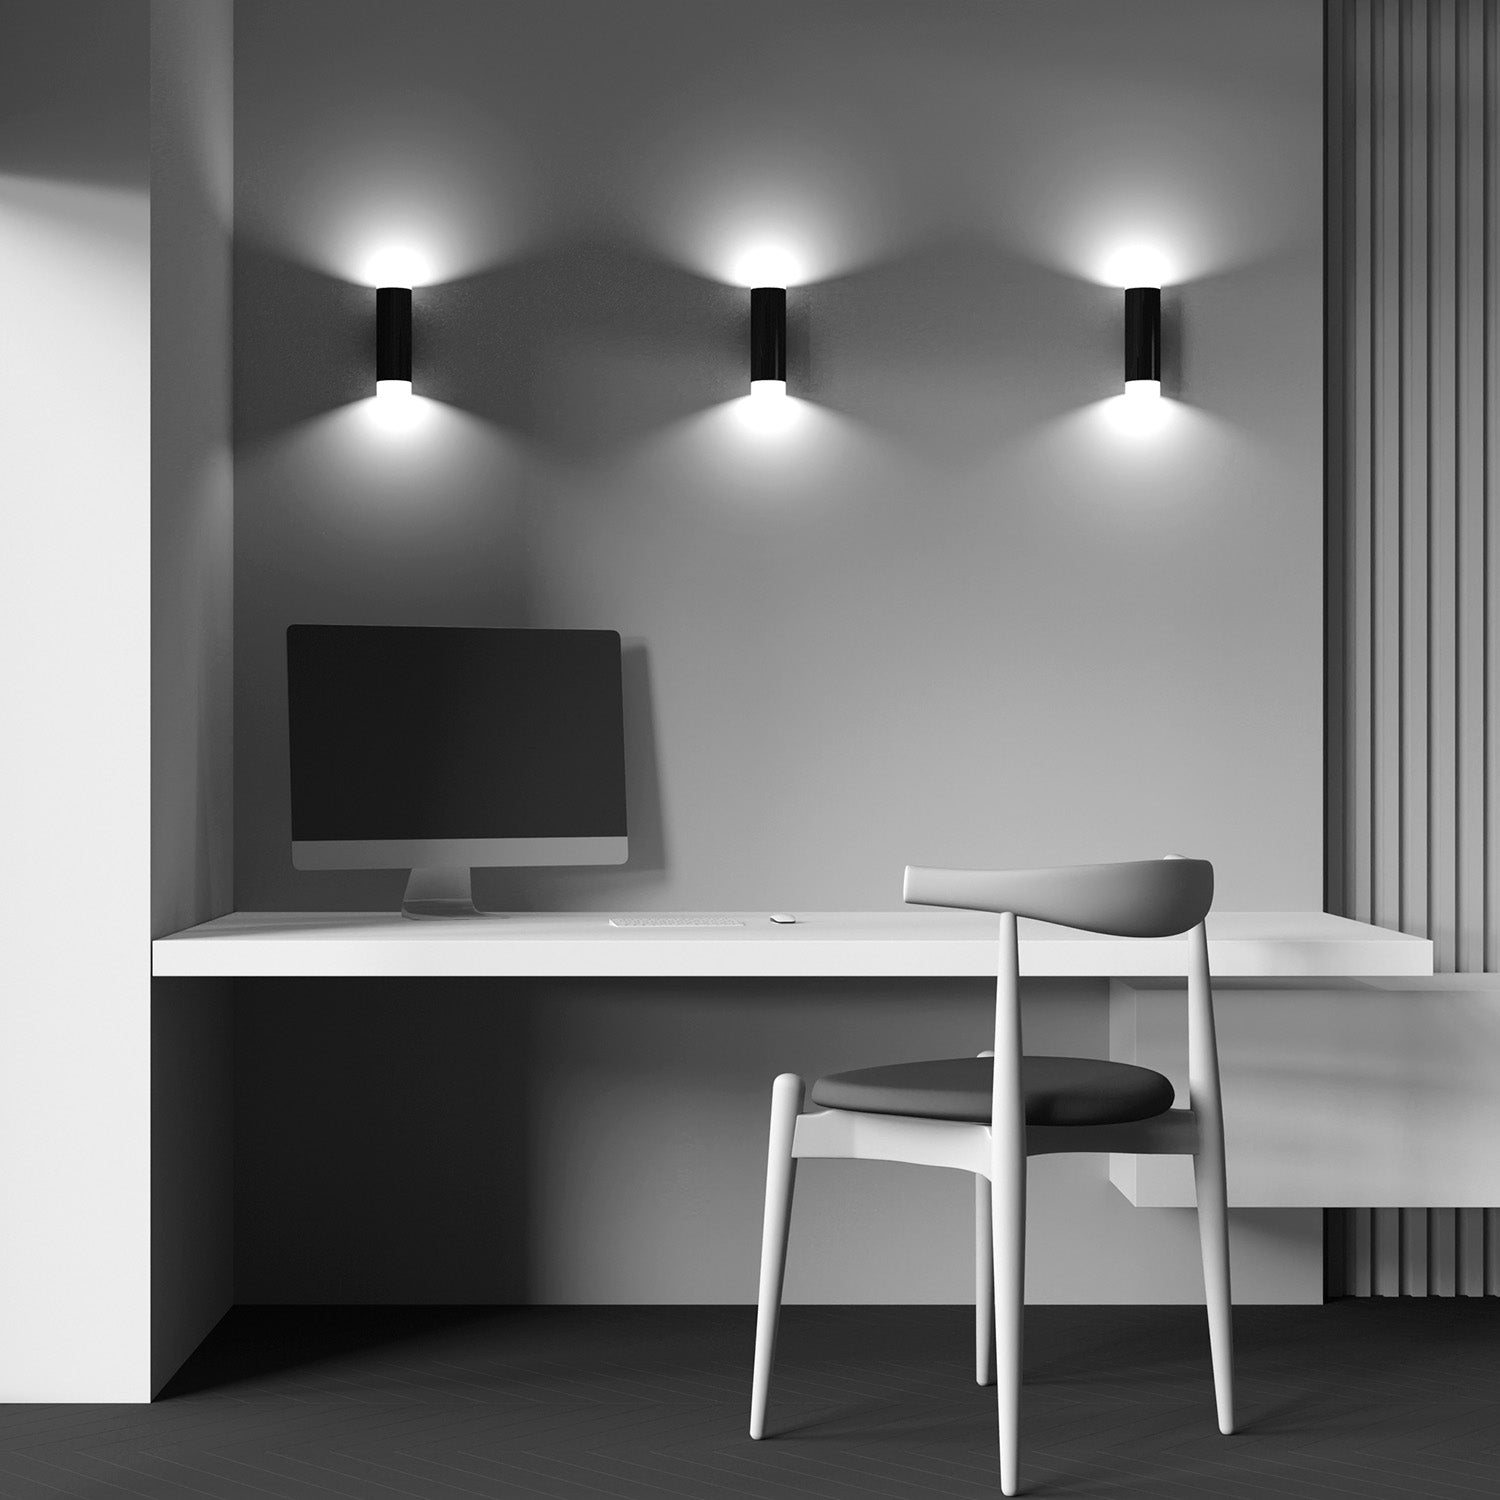 KILT – Integrierte LED-Wandleuchte im weißen oder schwarzen Design